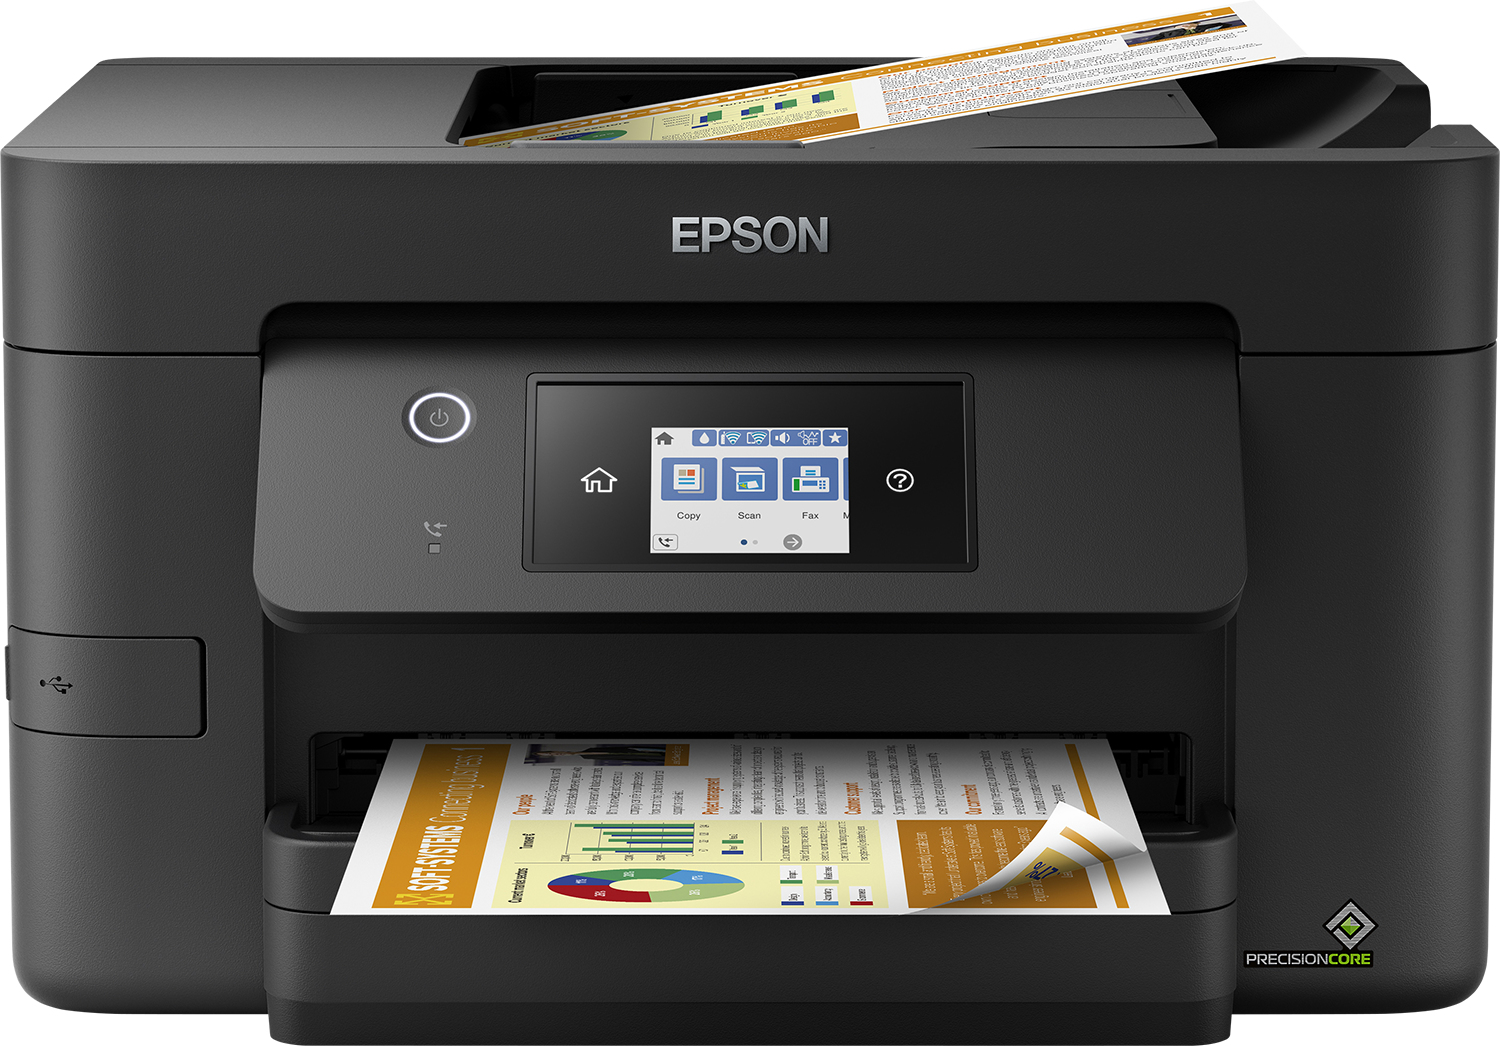 Image of Epson WorkForce Pro WF-3825DWF, stampante multifunzione A4 getto Inkjet (stampa, scansione, copia), Display LCD 6.8cm, WiFi Direct, 3 mesi inchiostro incluso con ReadyPrint